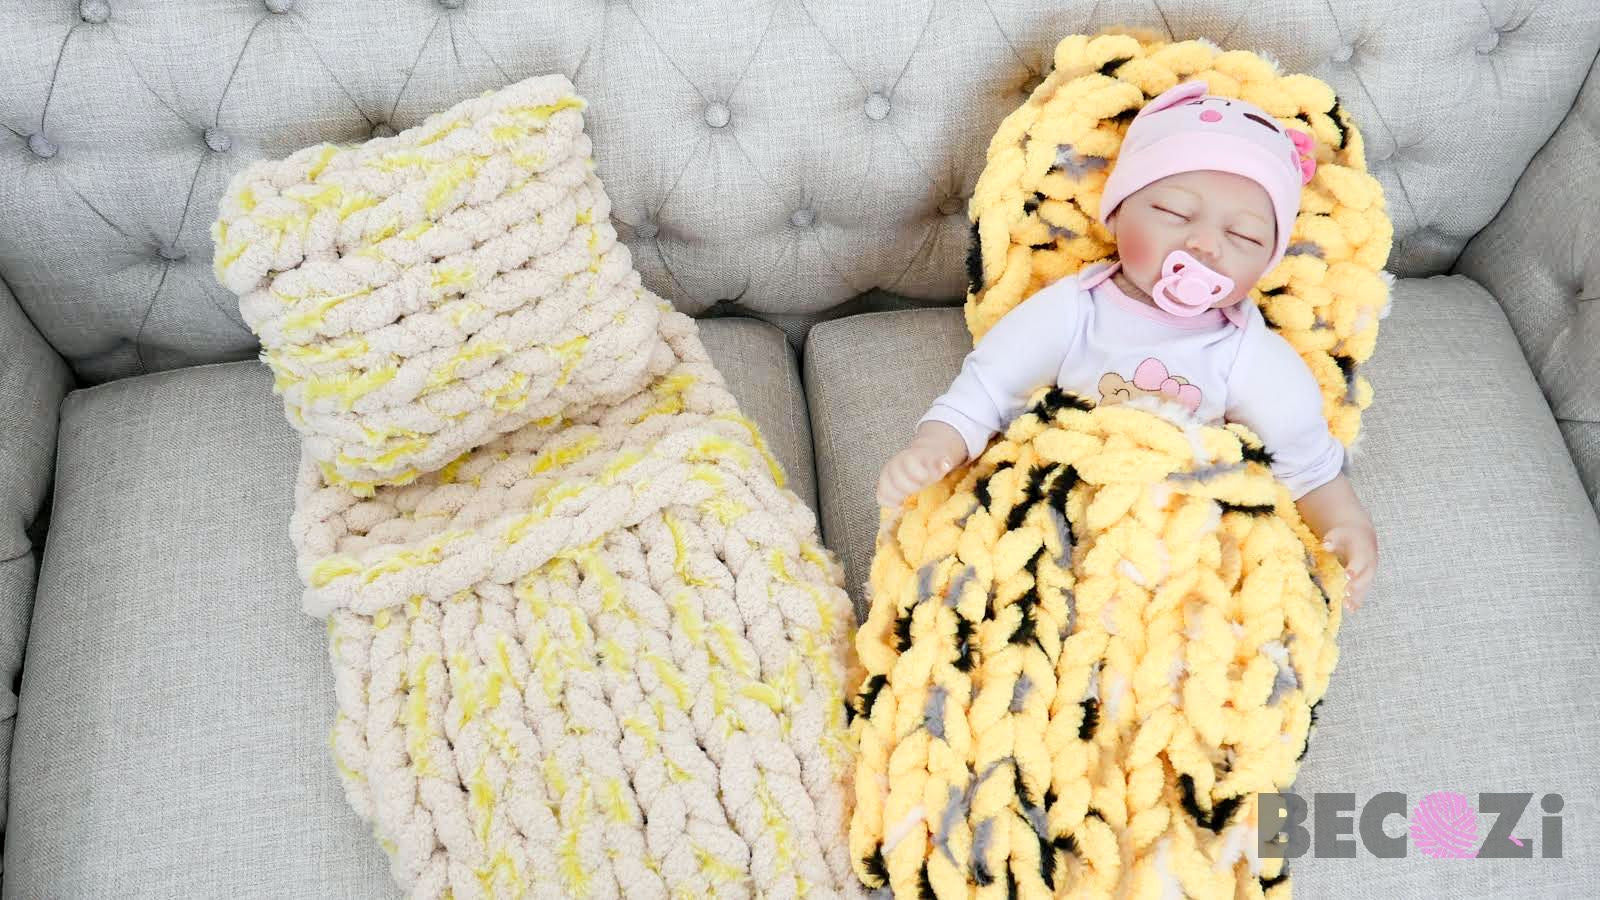 Baby blanket DIY kit